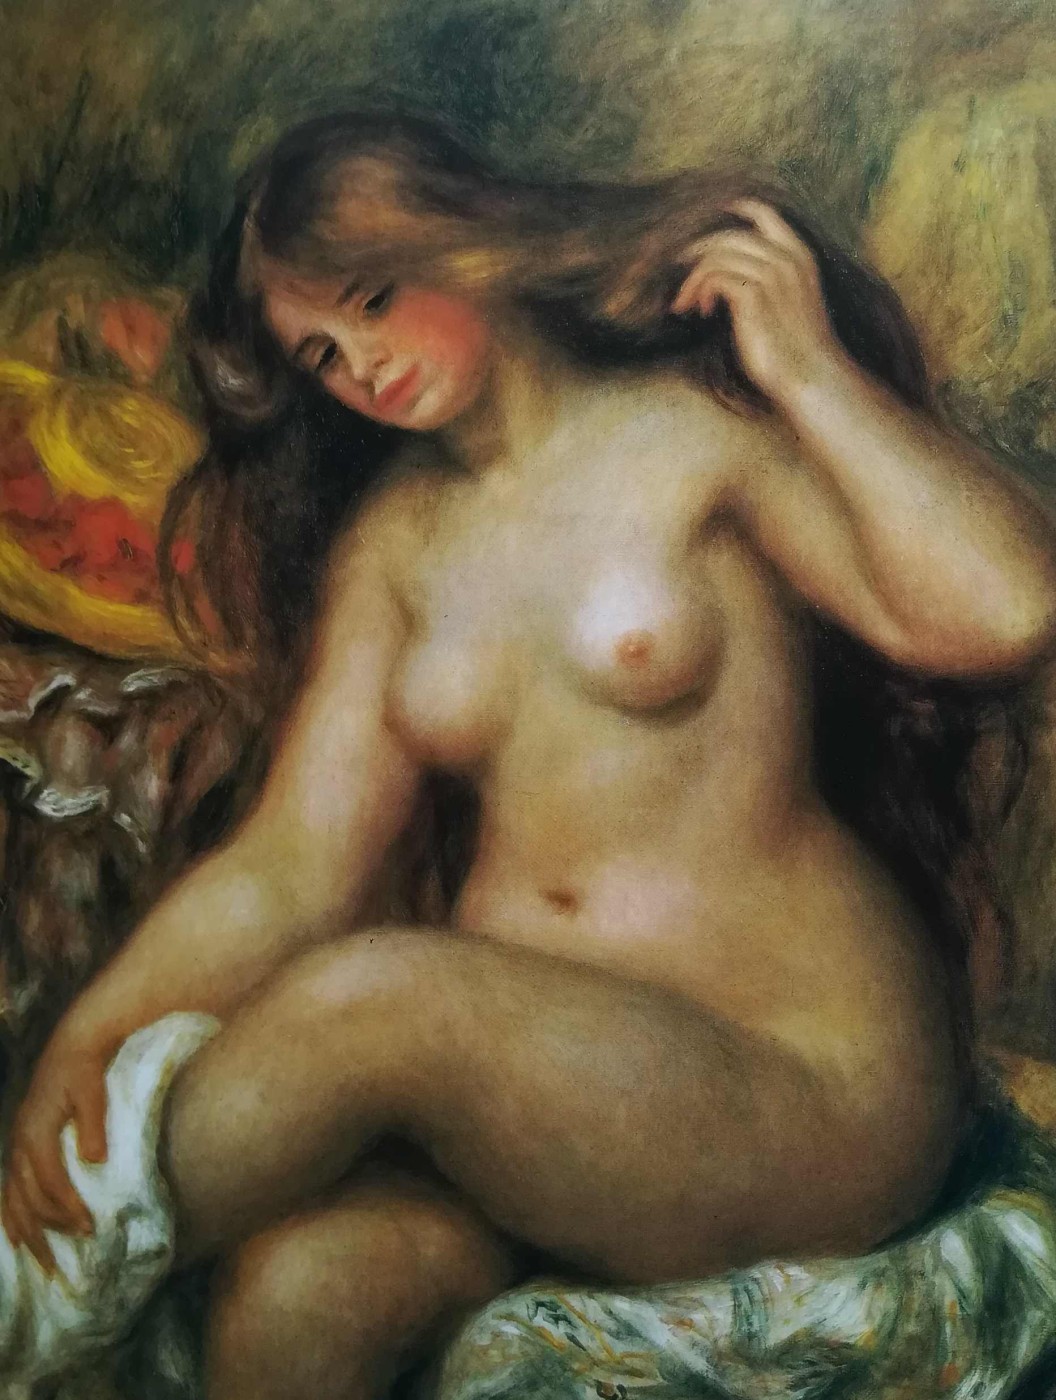 All’inizio del ciclo, Renoir aveva scelto di dipingere ragazze giovanissime dal fascino innocente